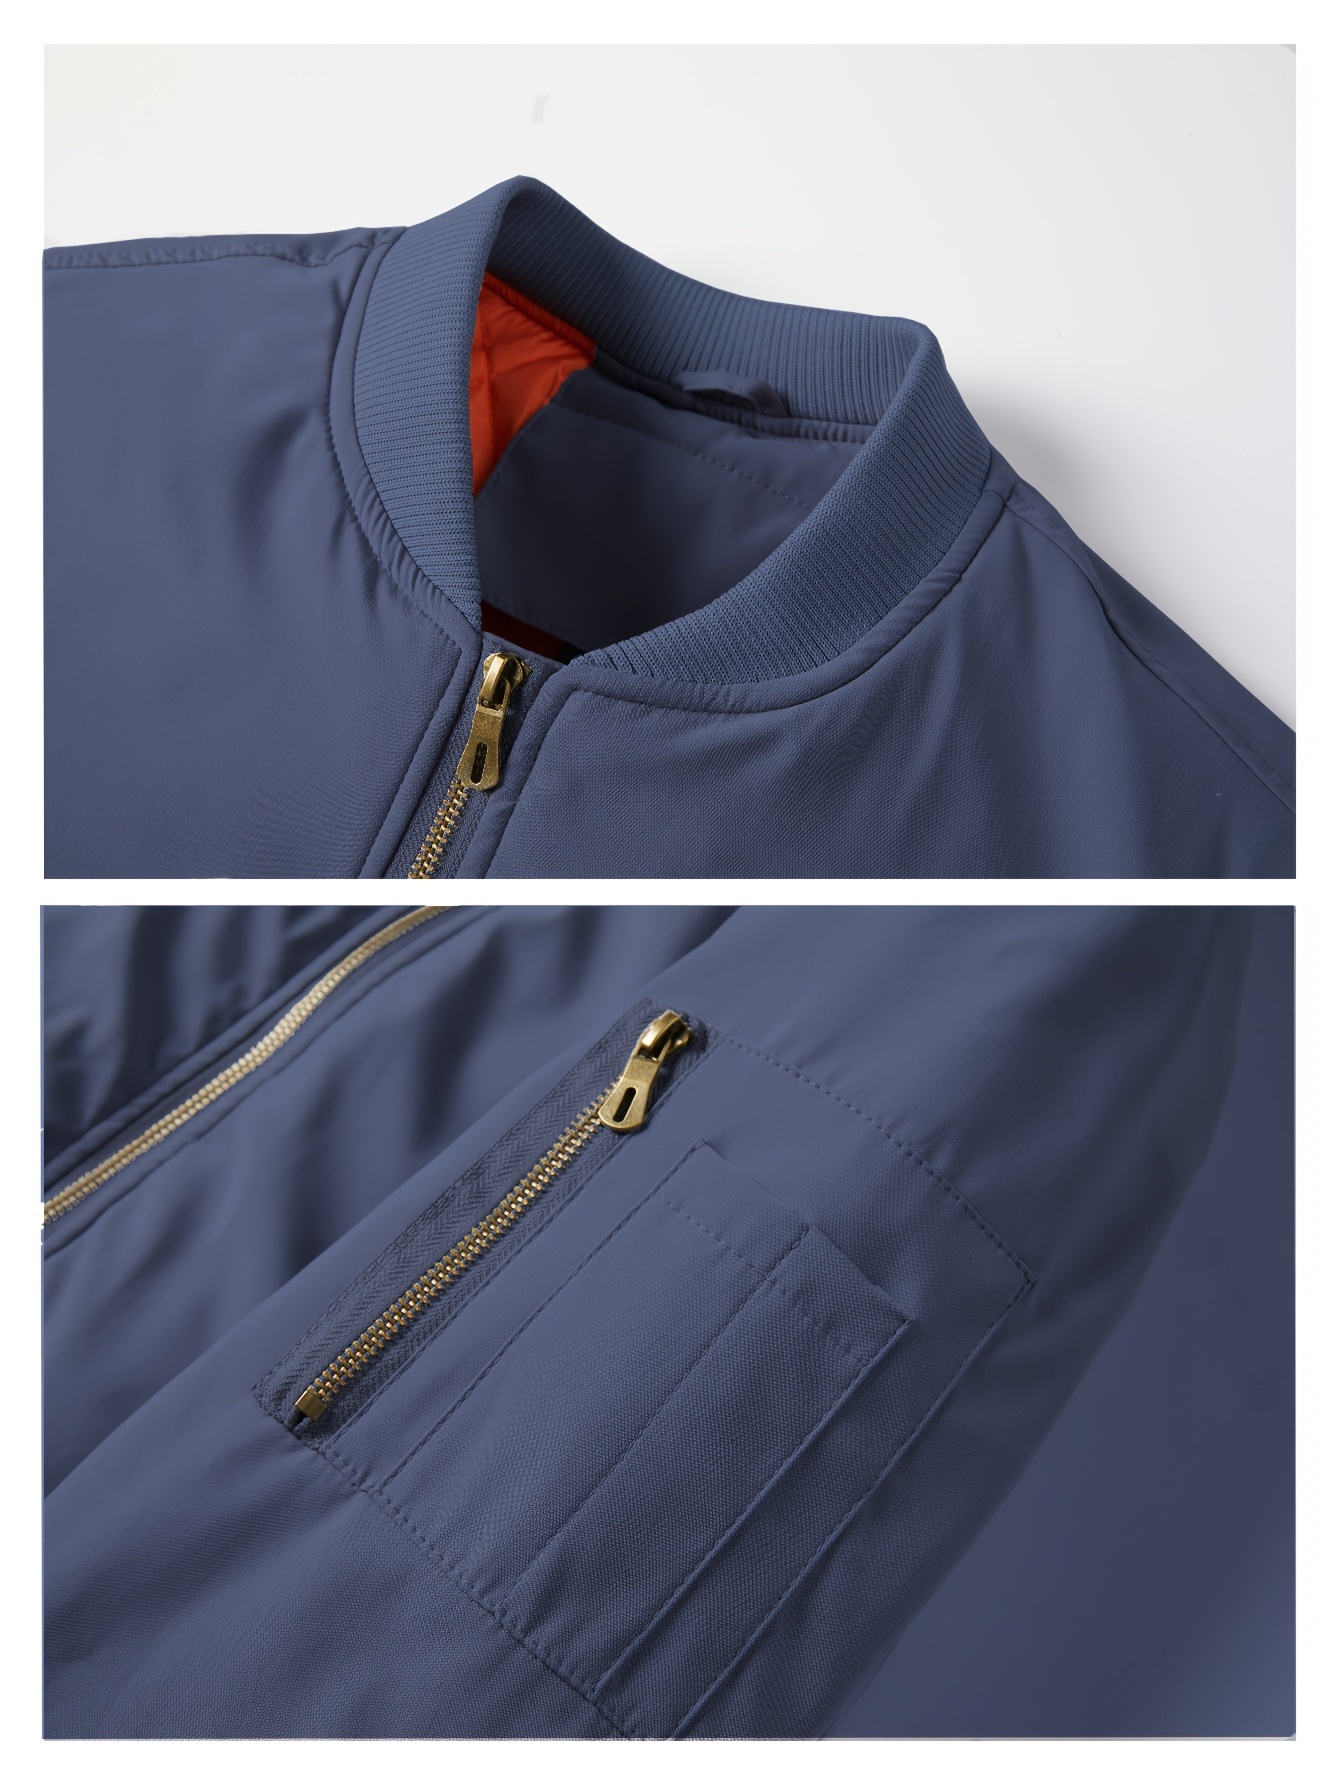 Tenemos una chaqueta clásica y multibolsillos superventas con forro  desmontable, cuello alto y capucha - Showroom